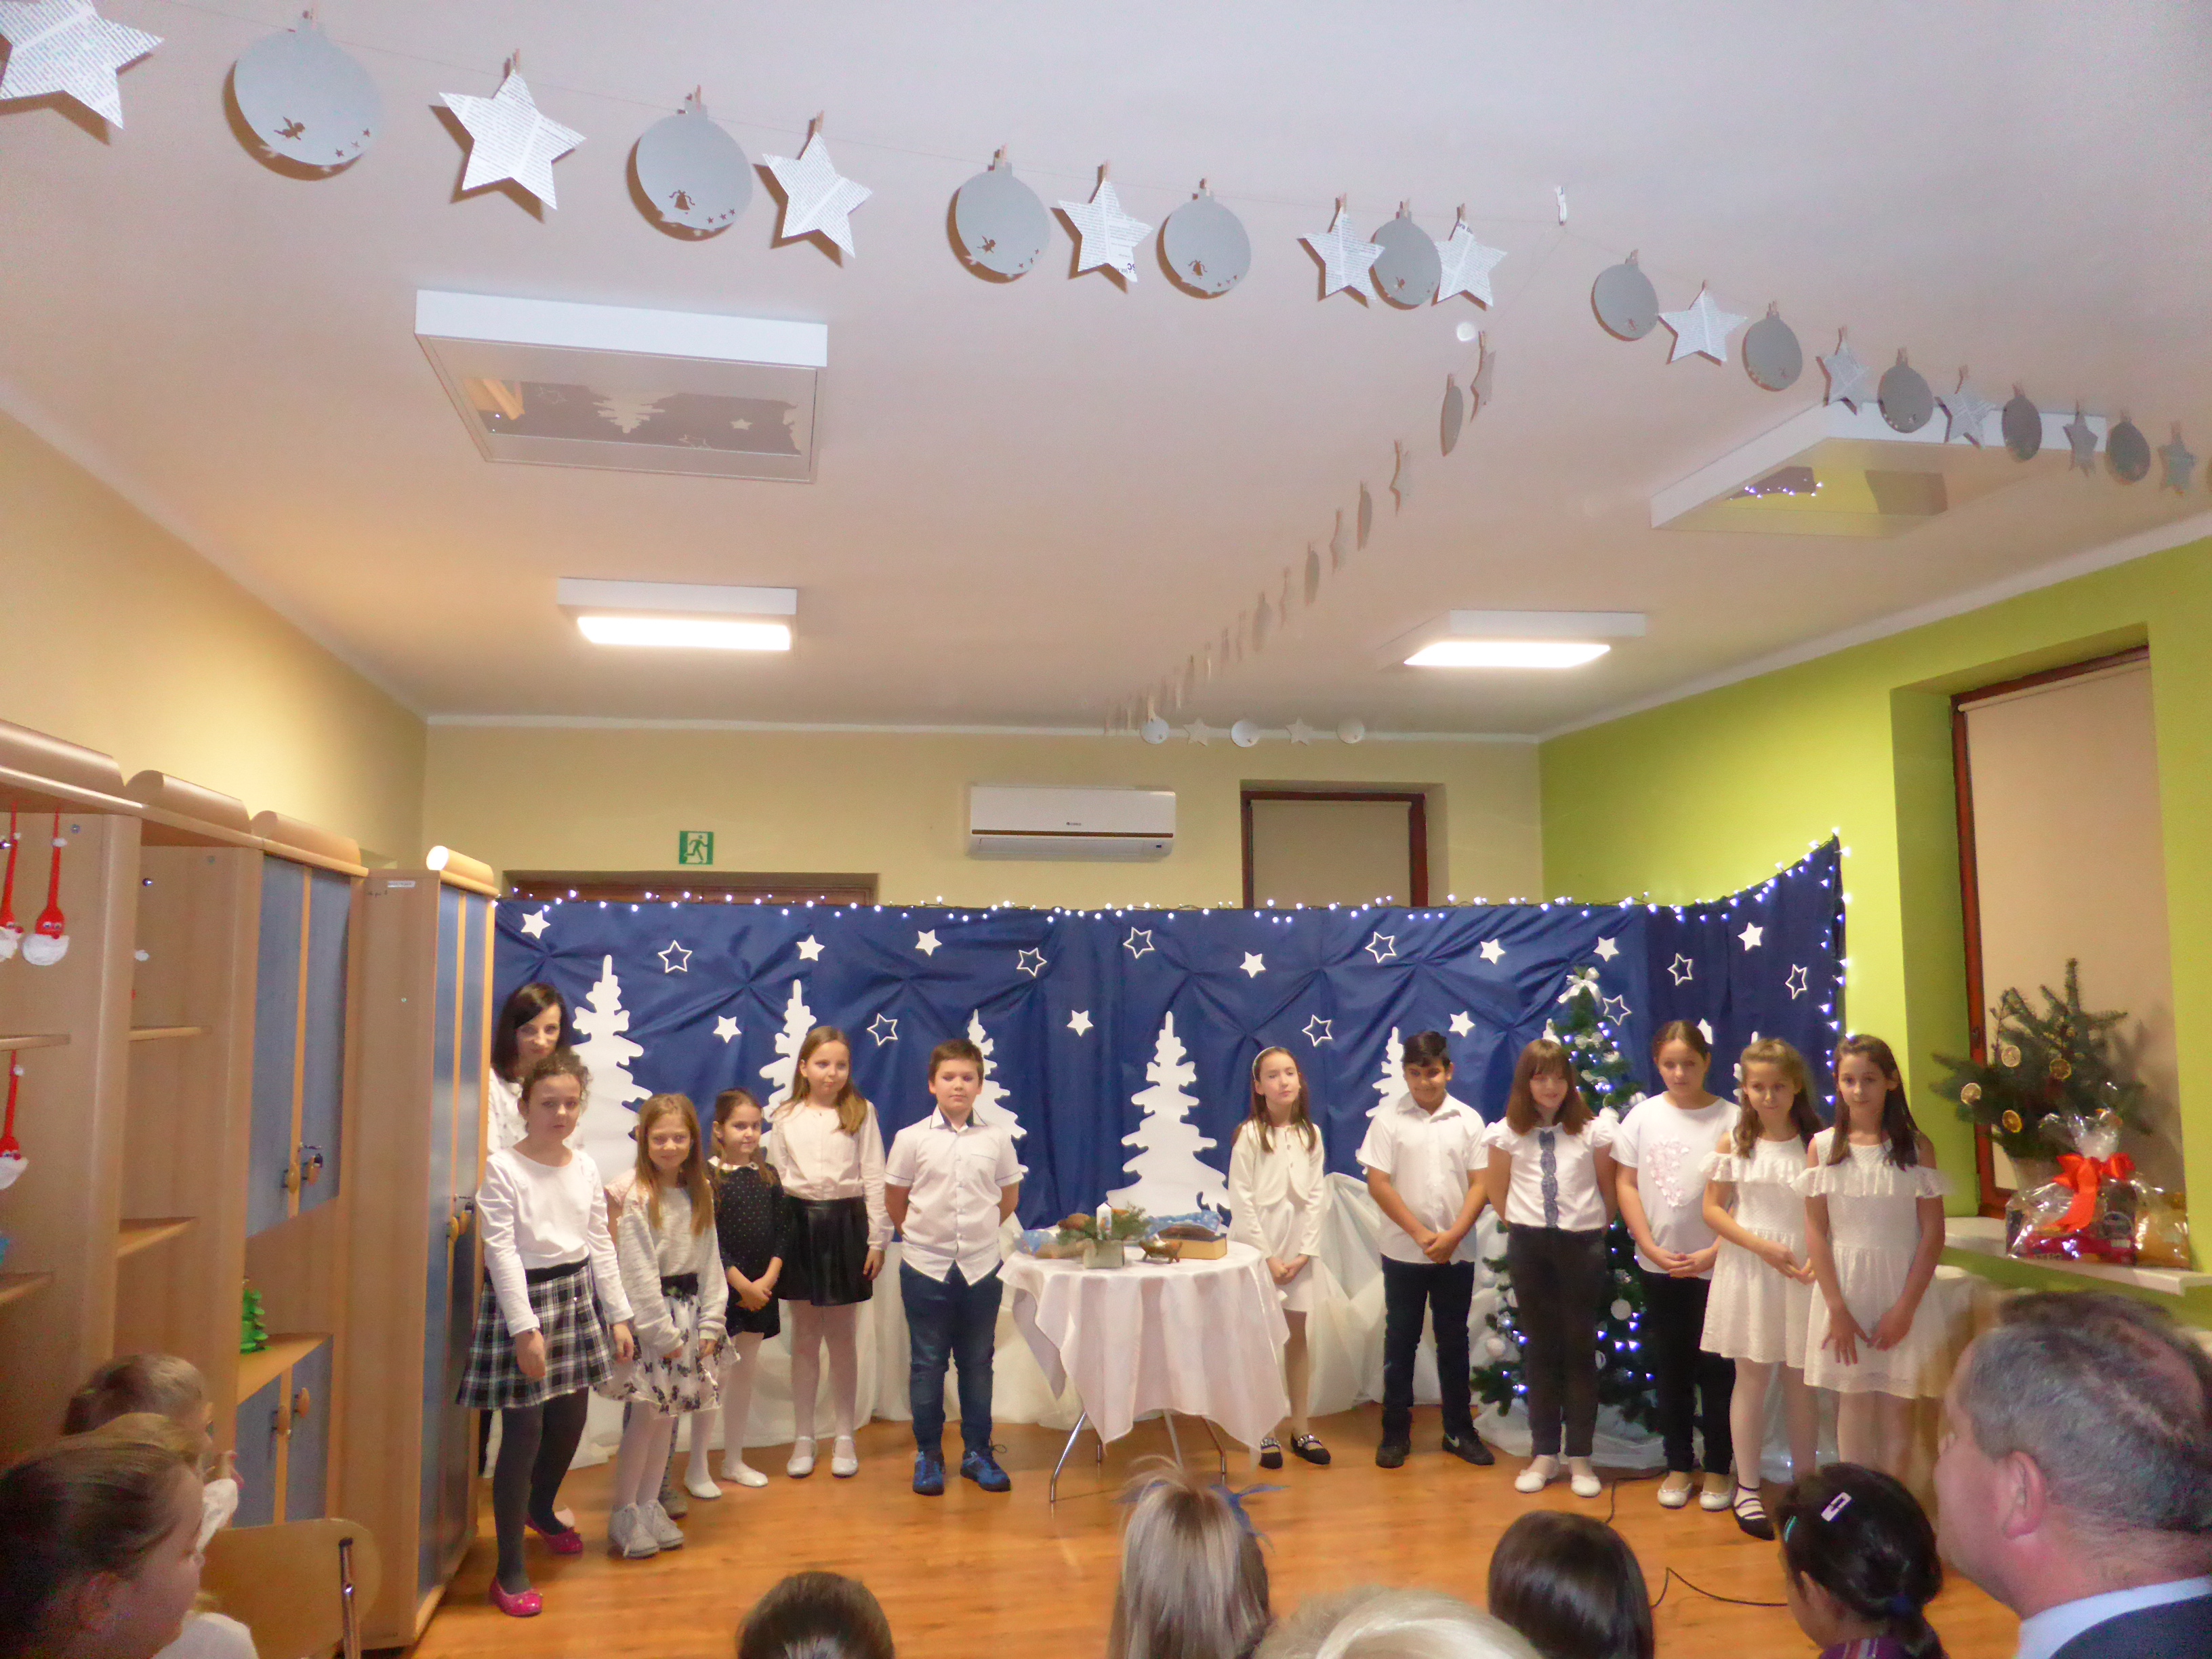 Na zdjęciu dzieci na scenie, za nimi dekoracja świąteczna - granatowy materiał, na nim papierowe choinki i gwiazdki